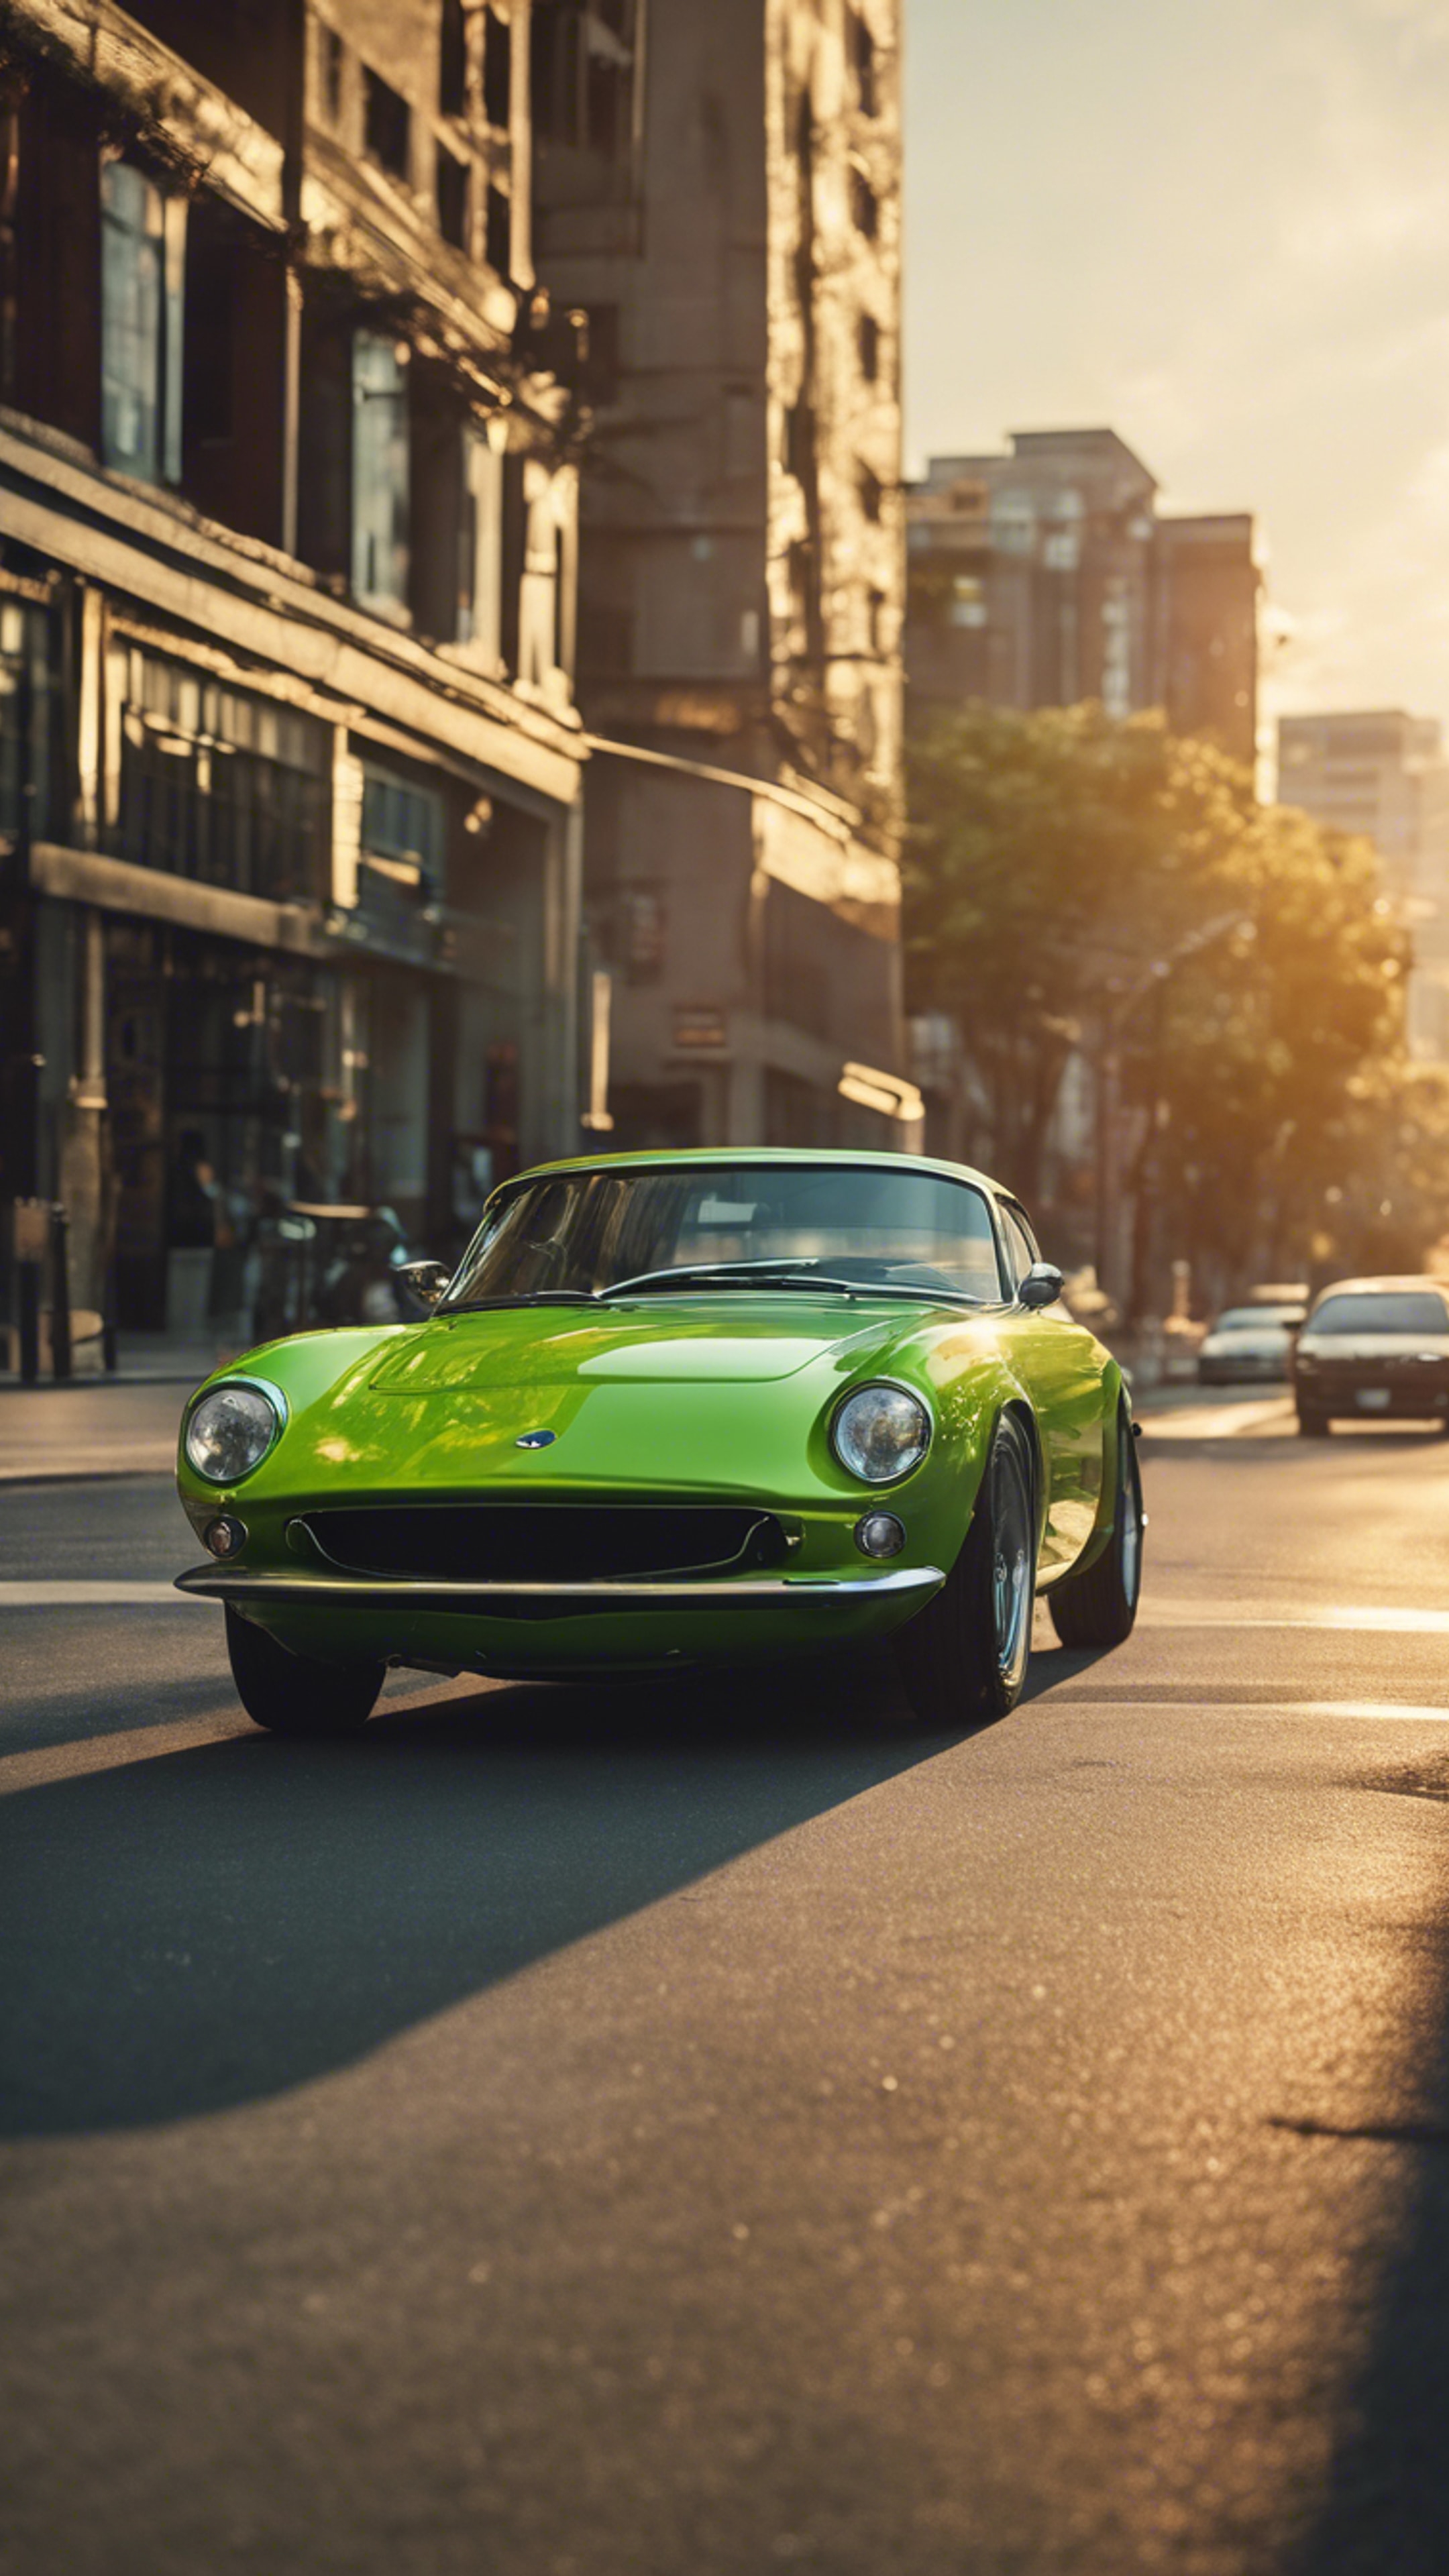 A lime green sports car speeding down a city street at sunset. duvar kağıdı[650ecab6c10046e0a1d5]